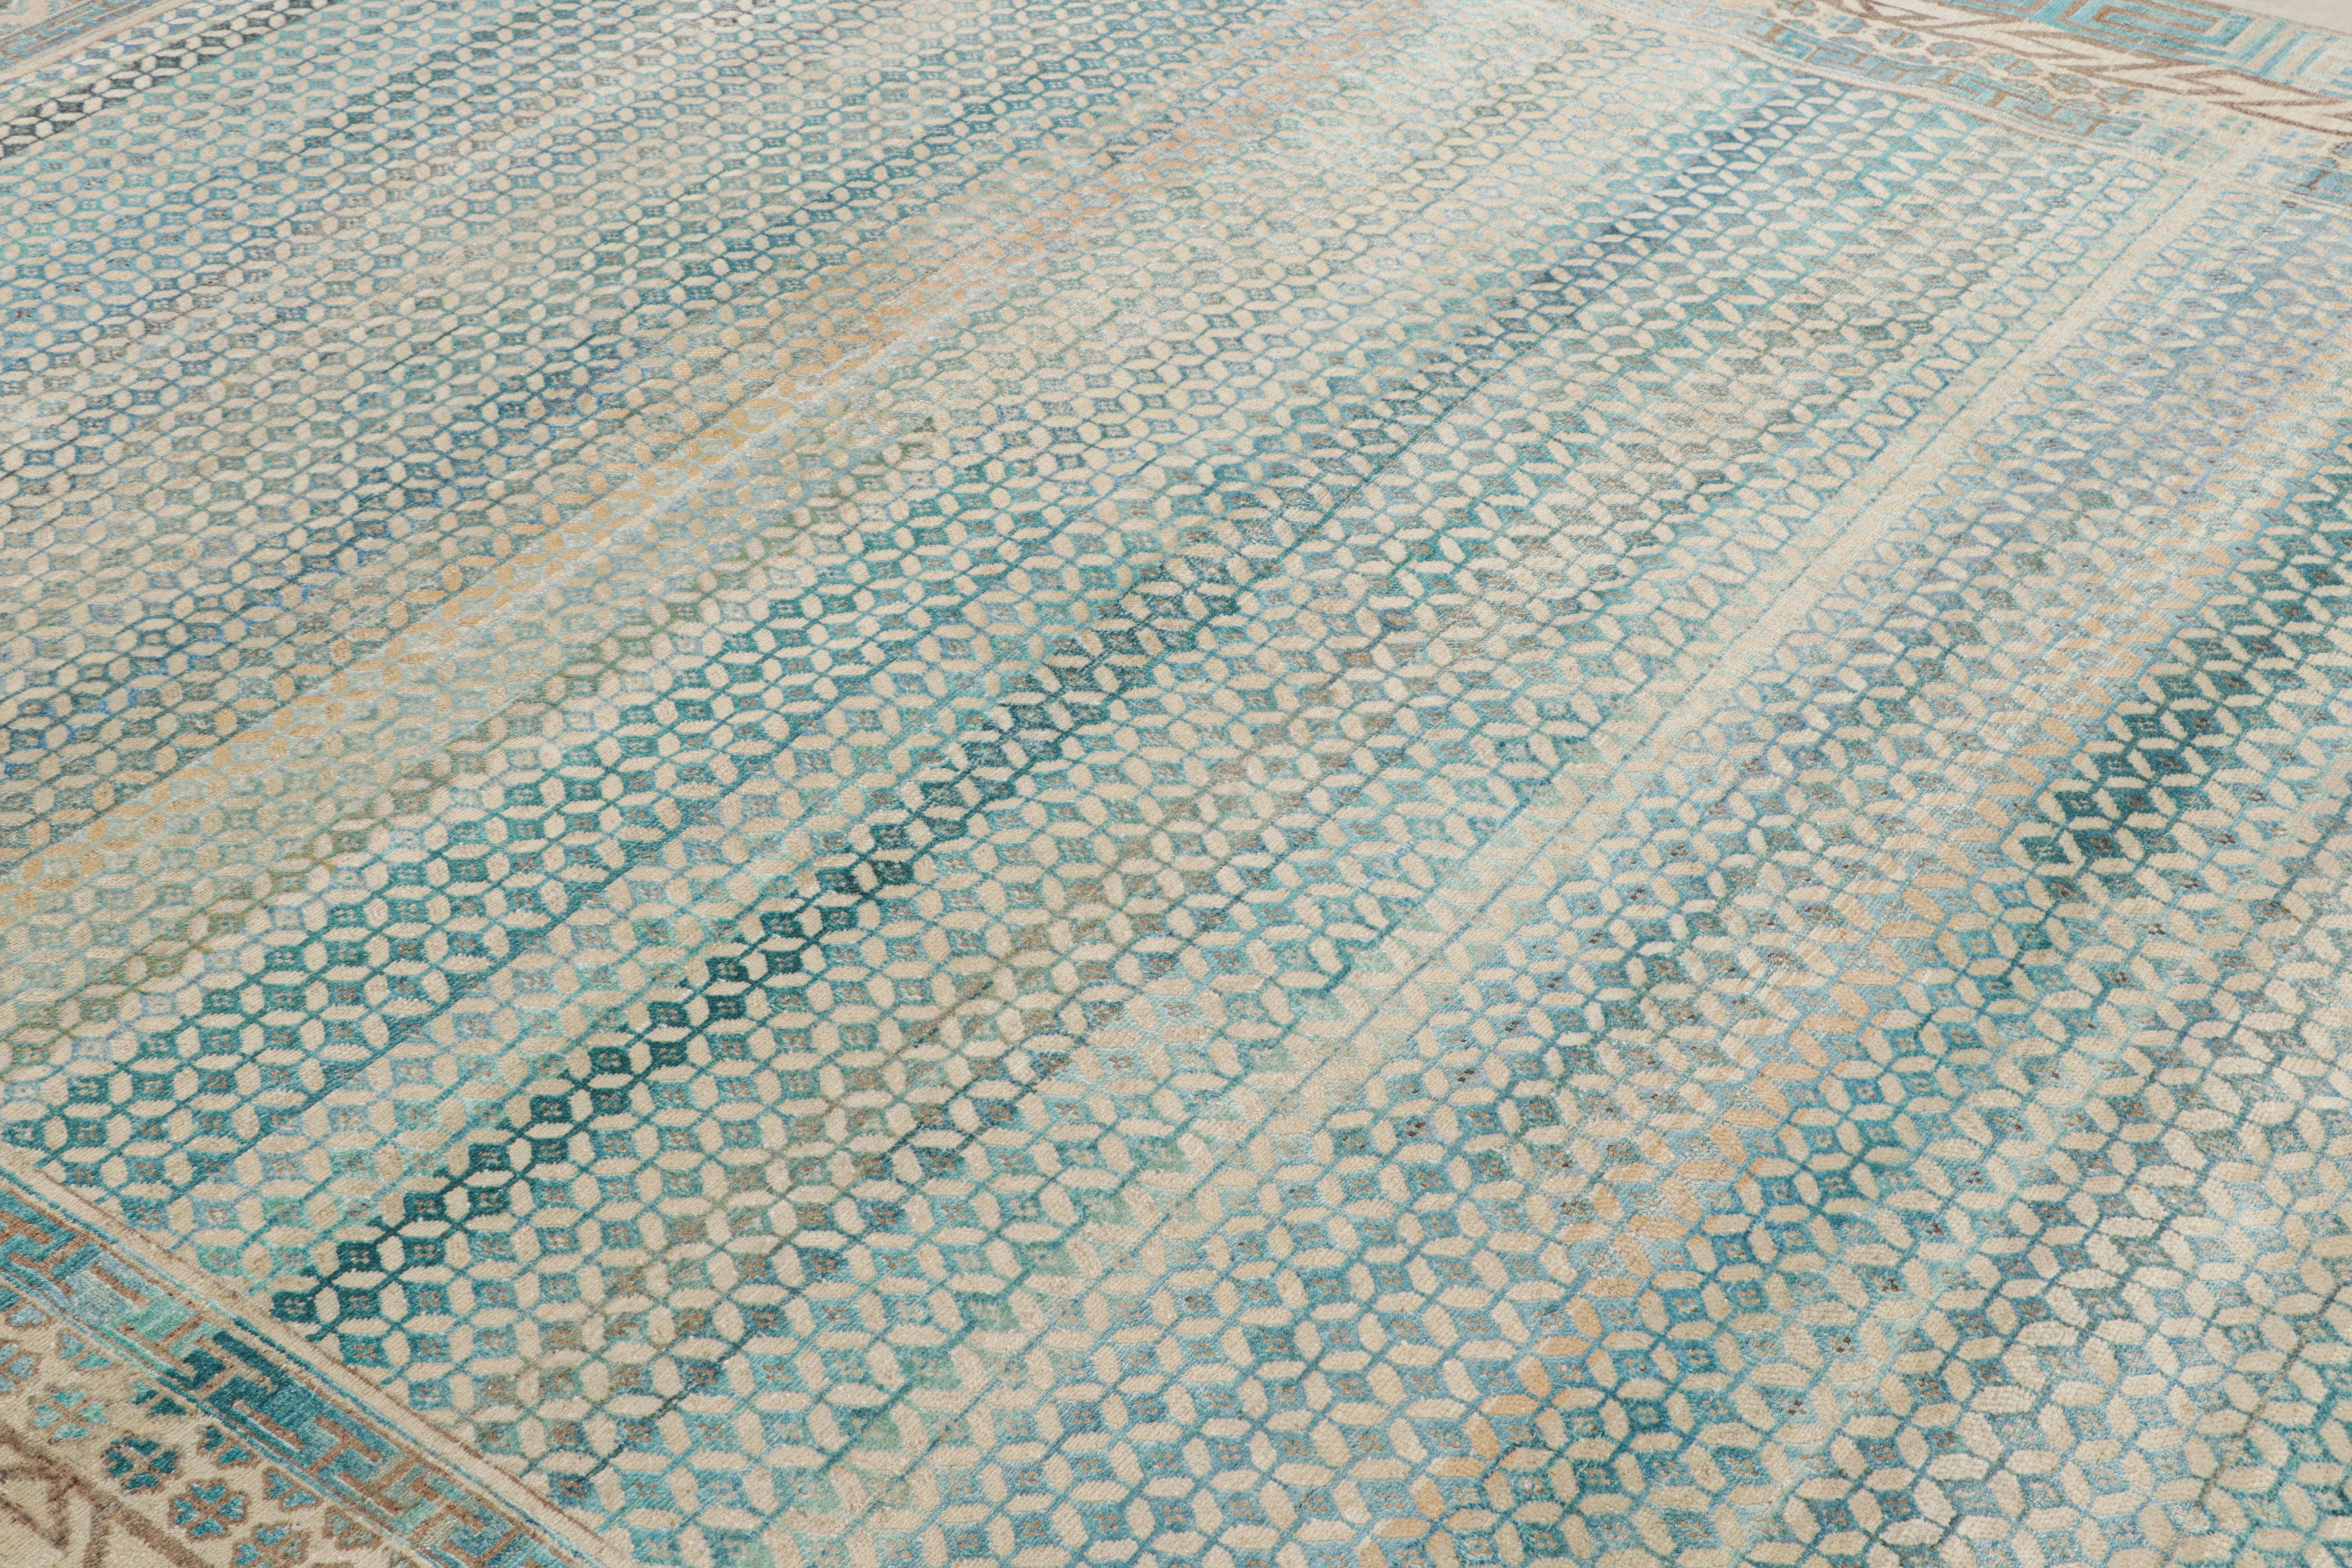 Dieser moderne Teppich 9x12 aus der Modern Classics Collection'S von Rug Kilim stellt eine kühne neue Herangehensweise an klassische Teppichmuster dar - handgeknüpft aus einer luxuriösen Mischung aus Wolle und Seide.

Über das Design: 

Bei diesem